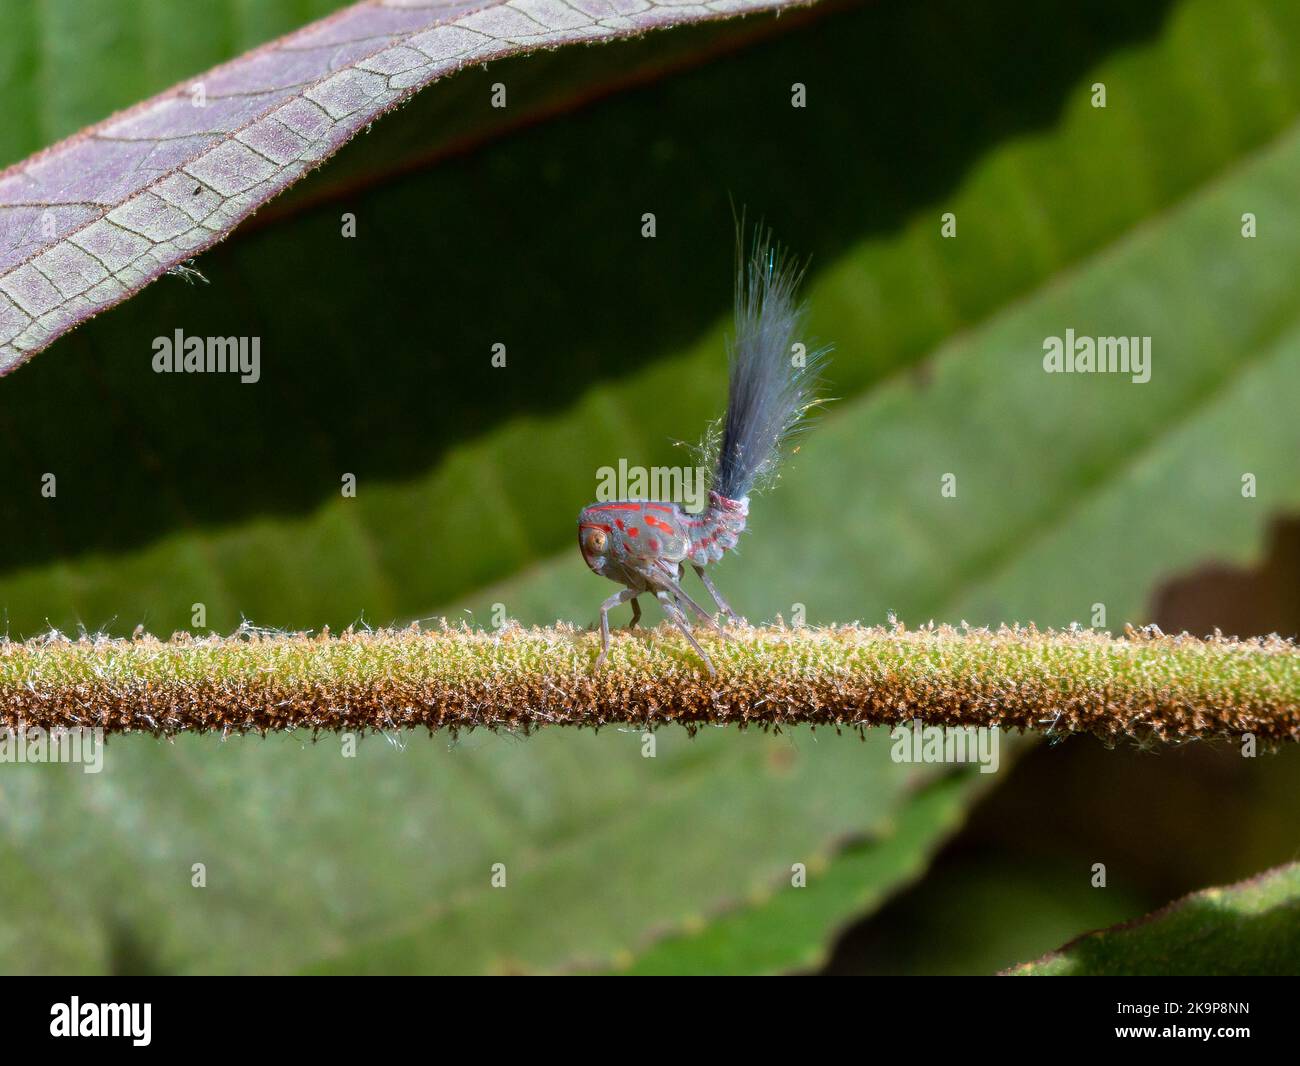 Une espèce colorée avec une queue de cheveux fantaisie, c'est une nymphe de Leafhopper (Hemiptera) dans la famille des Nogodidae. Amazonas, Brésil Banque D'Images